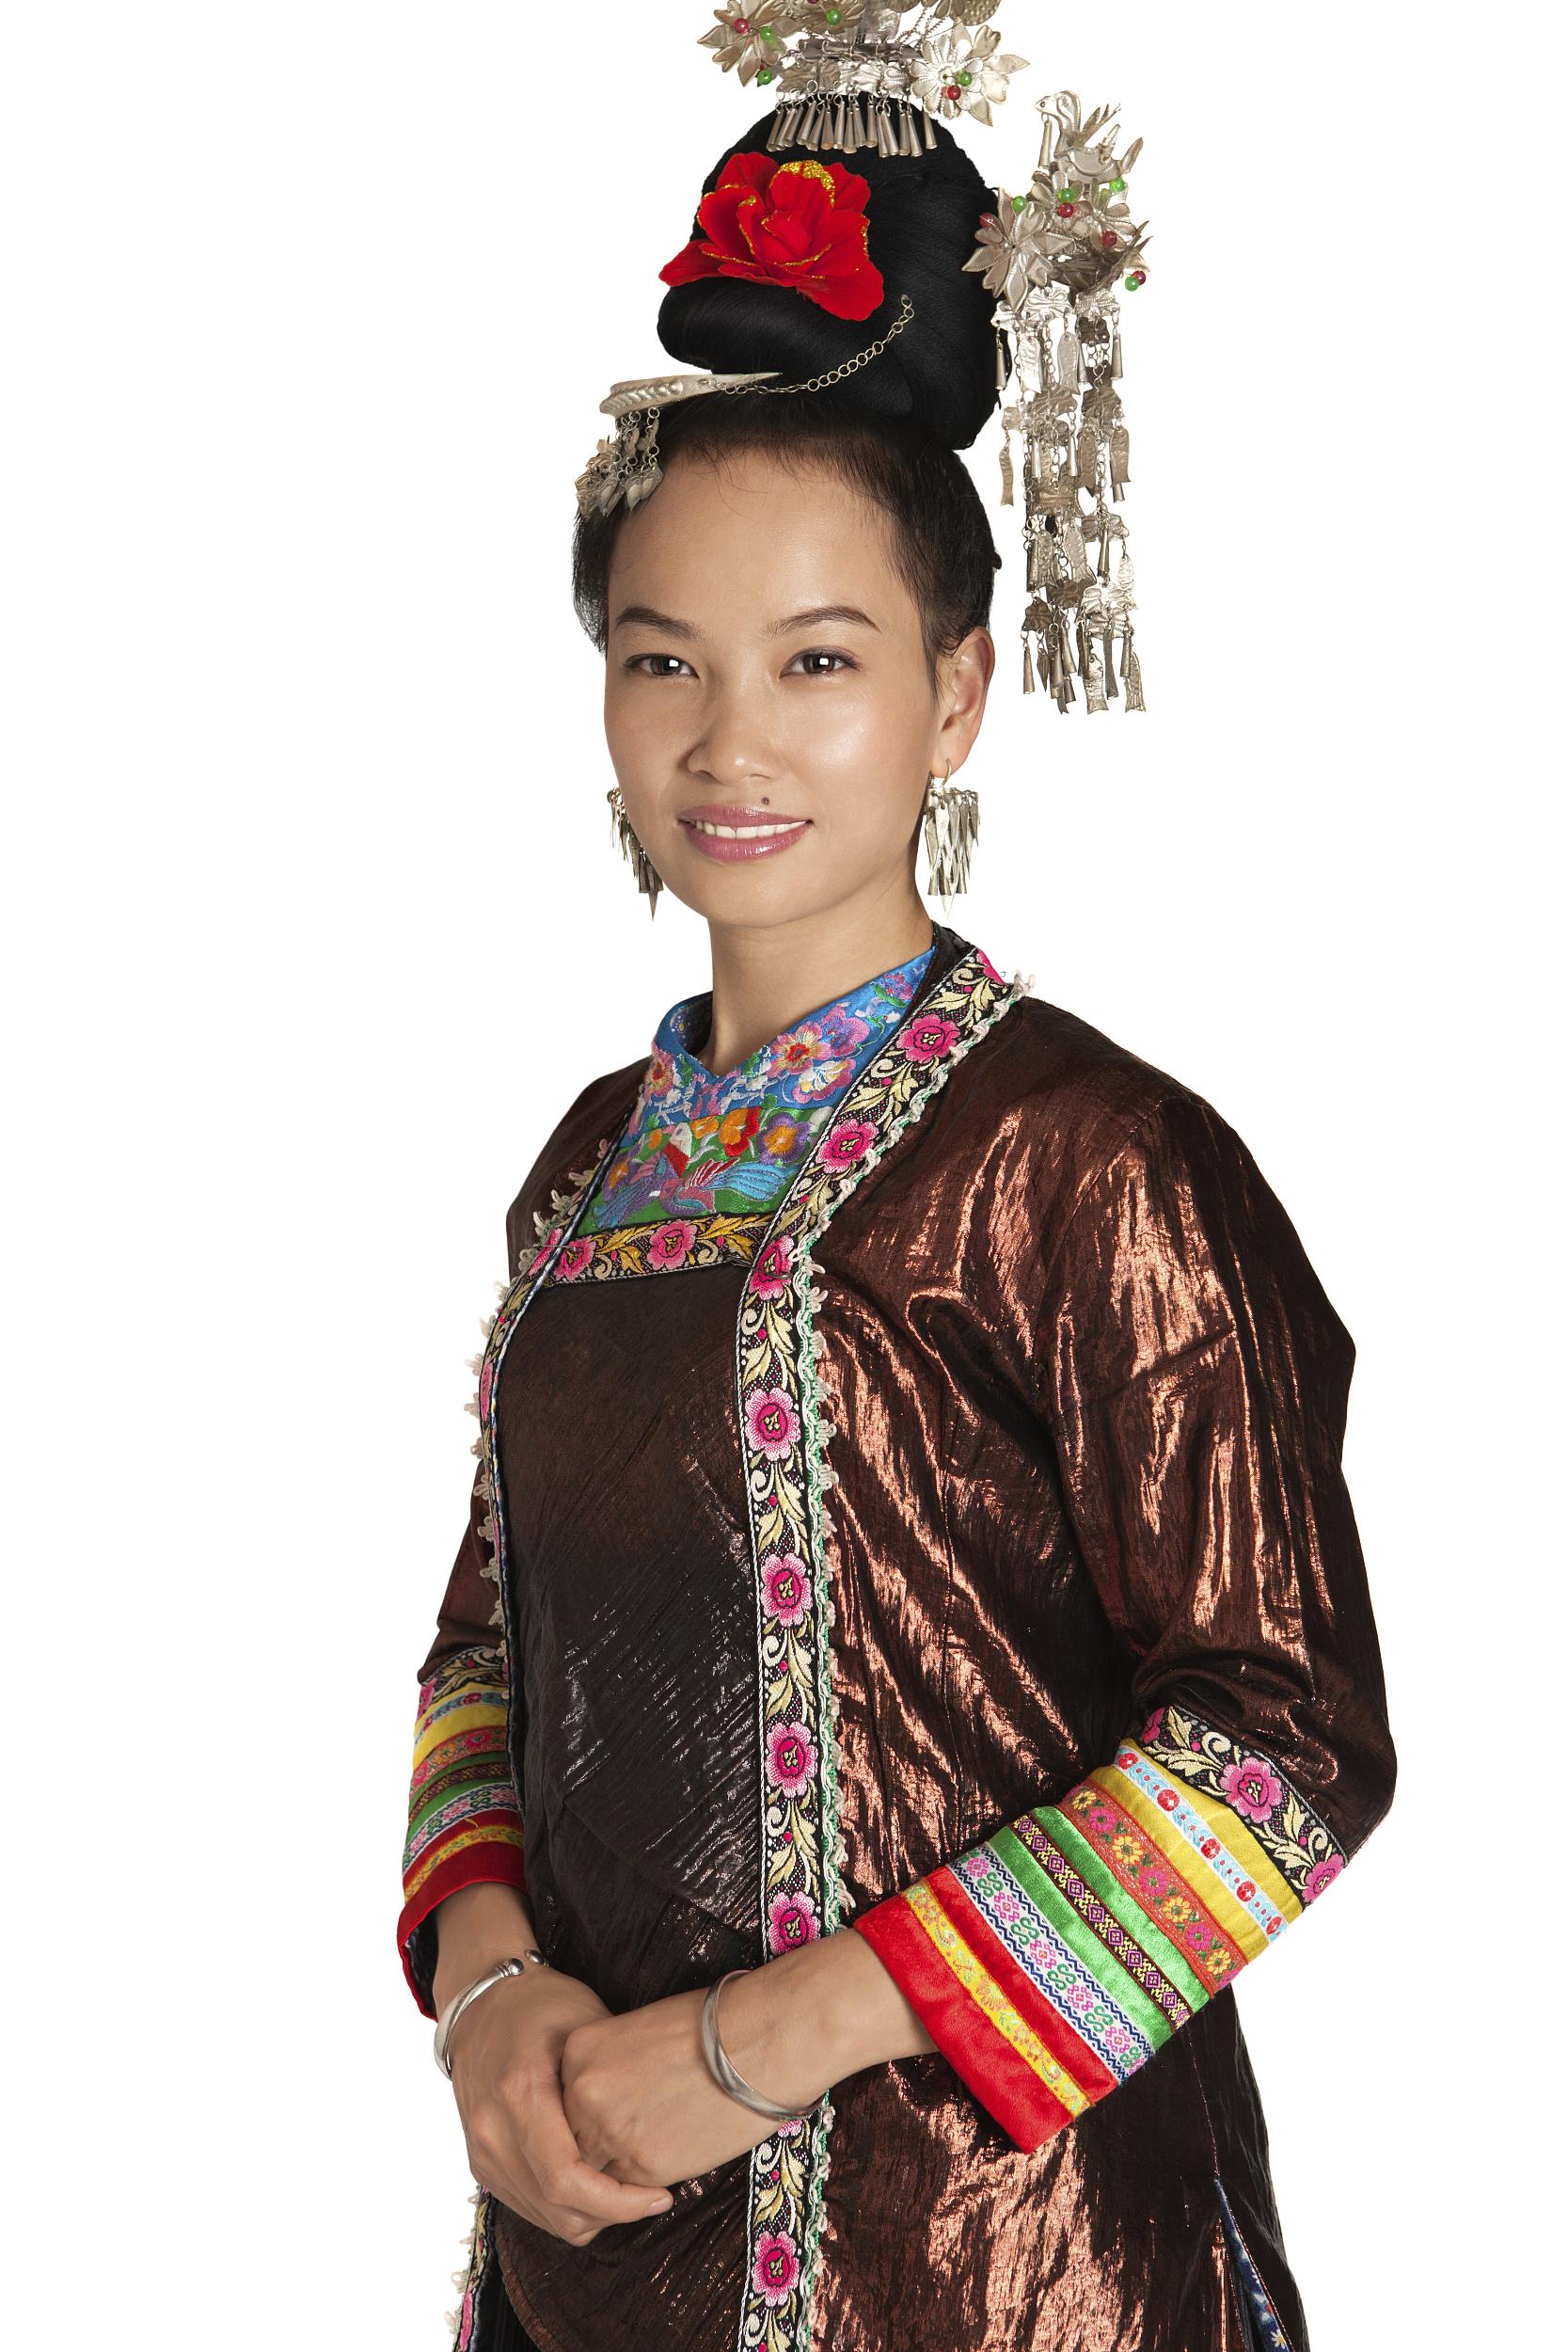 历经千锤百炼终出炉,彰显侗族工匠精神的传统制衣